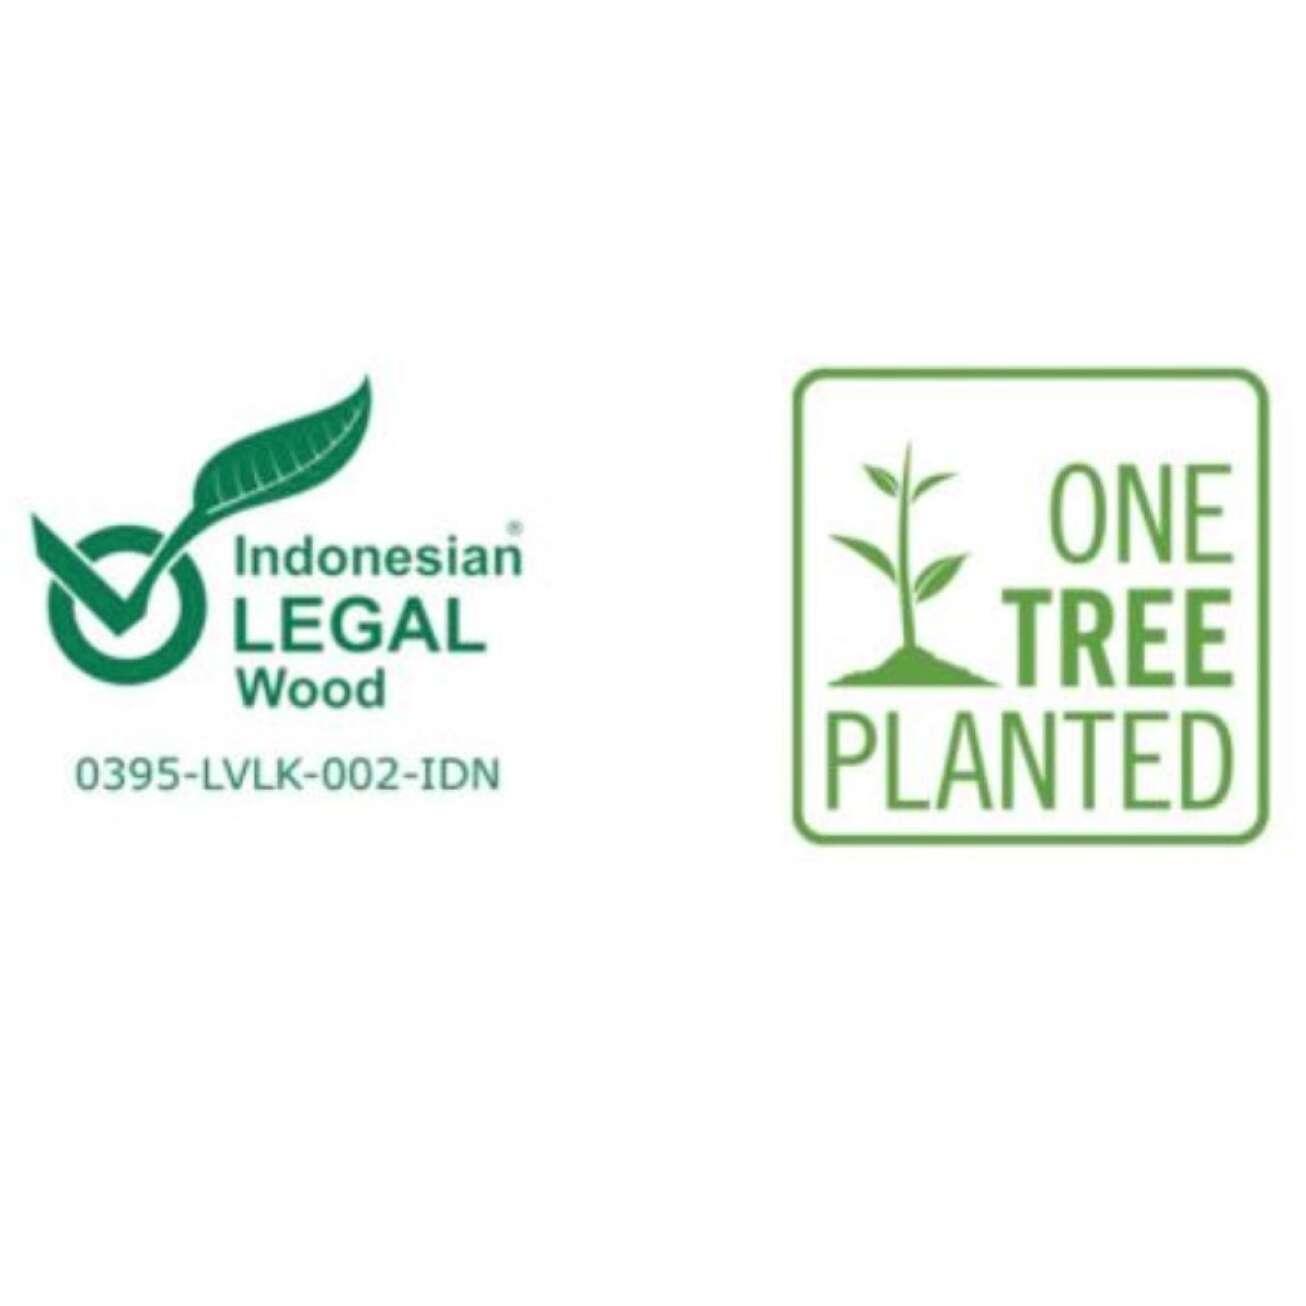 Indonesian legal wood og One tree planted - teak-logo for Fine Design